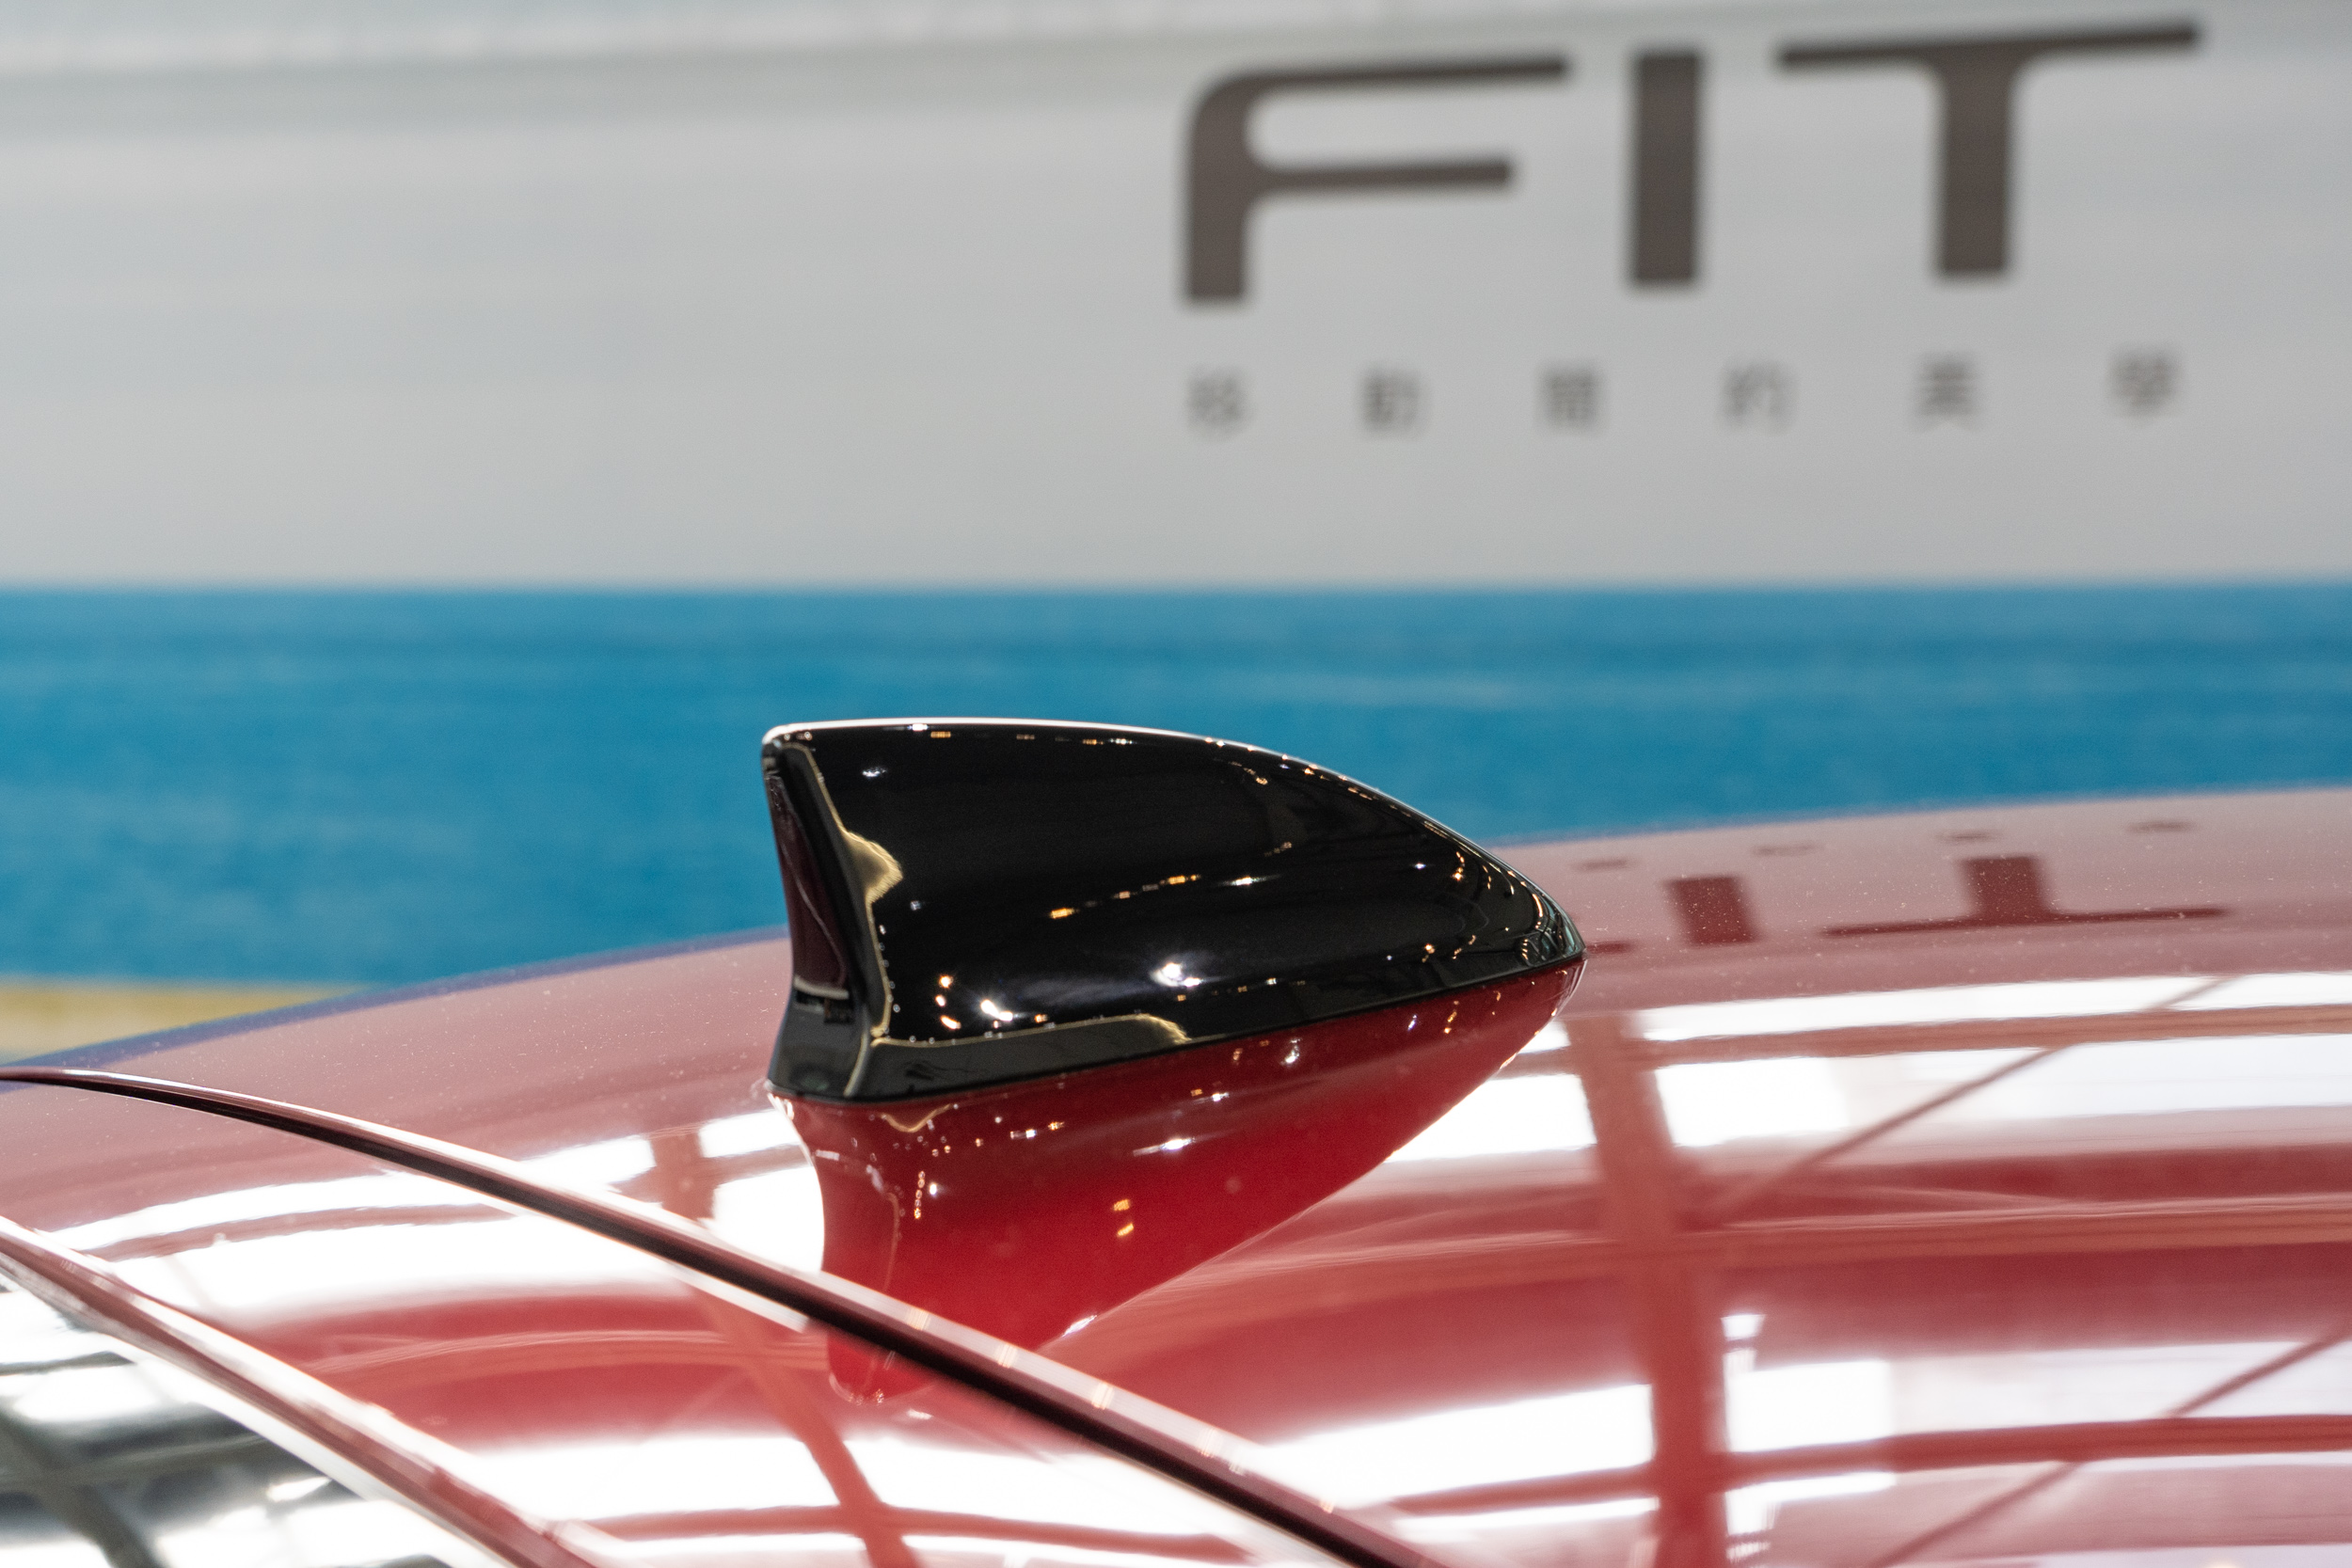 全新 Fit 車高較上世代降低，但因爲改為固定式的鯊魚鰭天線，因此在車身高度計算會包含天線，讓車高數據看起來比上世代更高。